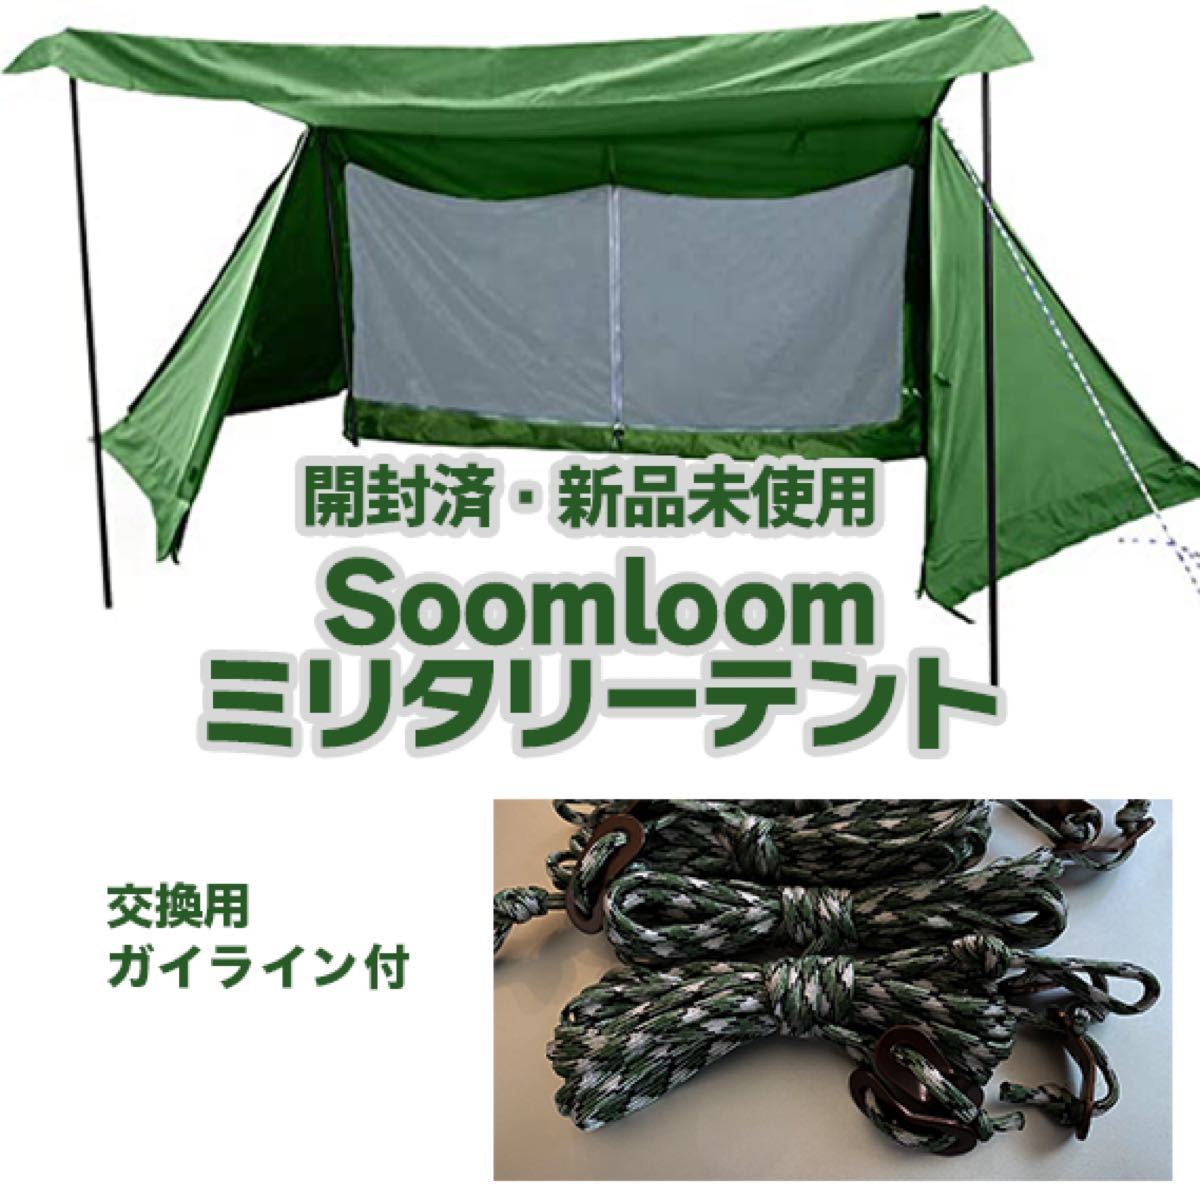 Soomloom TC素材ミリタリーテント+交換用ガイロープ /スカート付軍幕